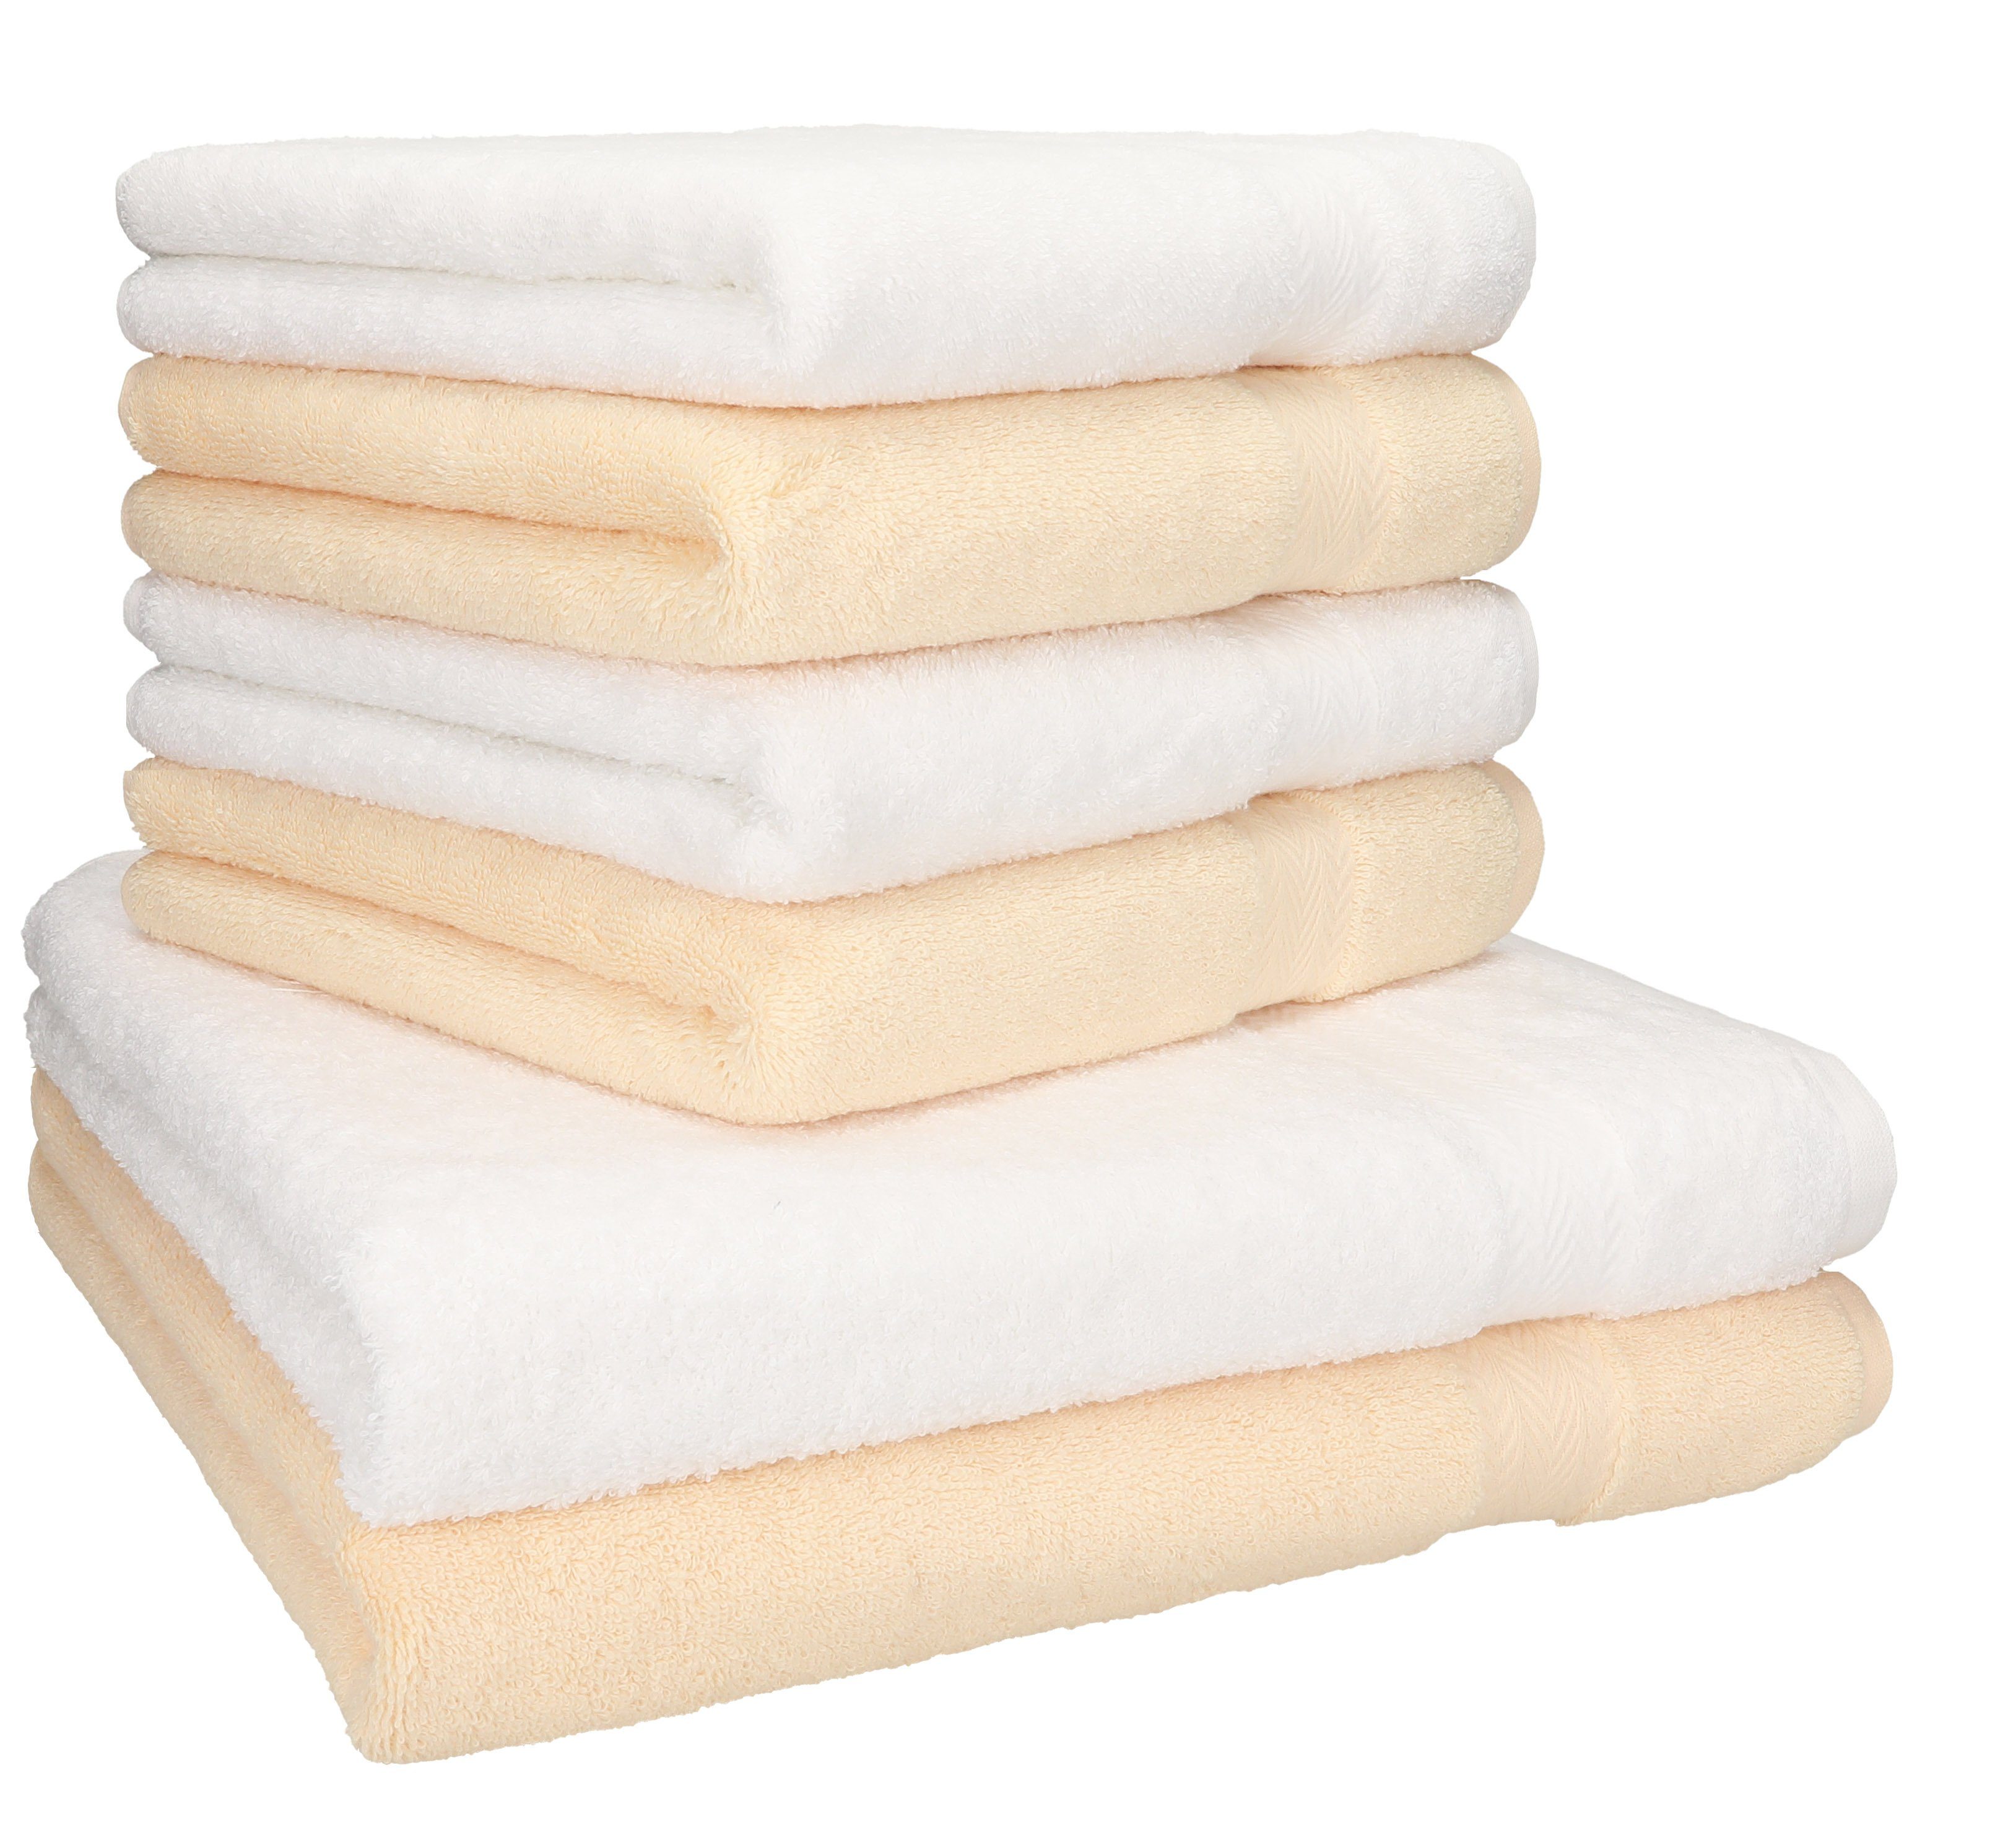 Betz Handtuch Set 6-TLG. Handtuch-Set Premium 100% Baumwolle 2 Duschtücher  4 Handtücher Farbe weiß und beige, 100% Baumwolle